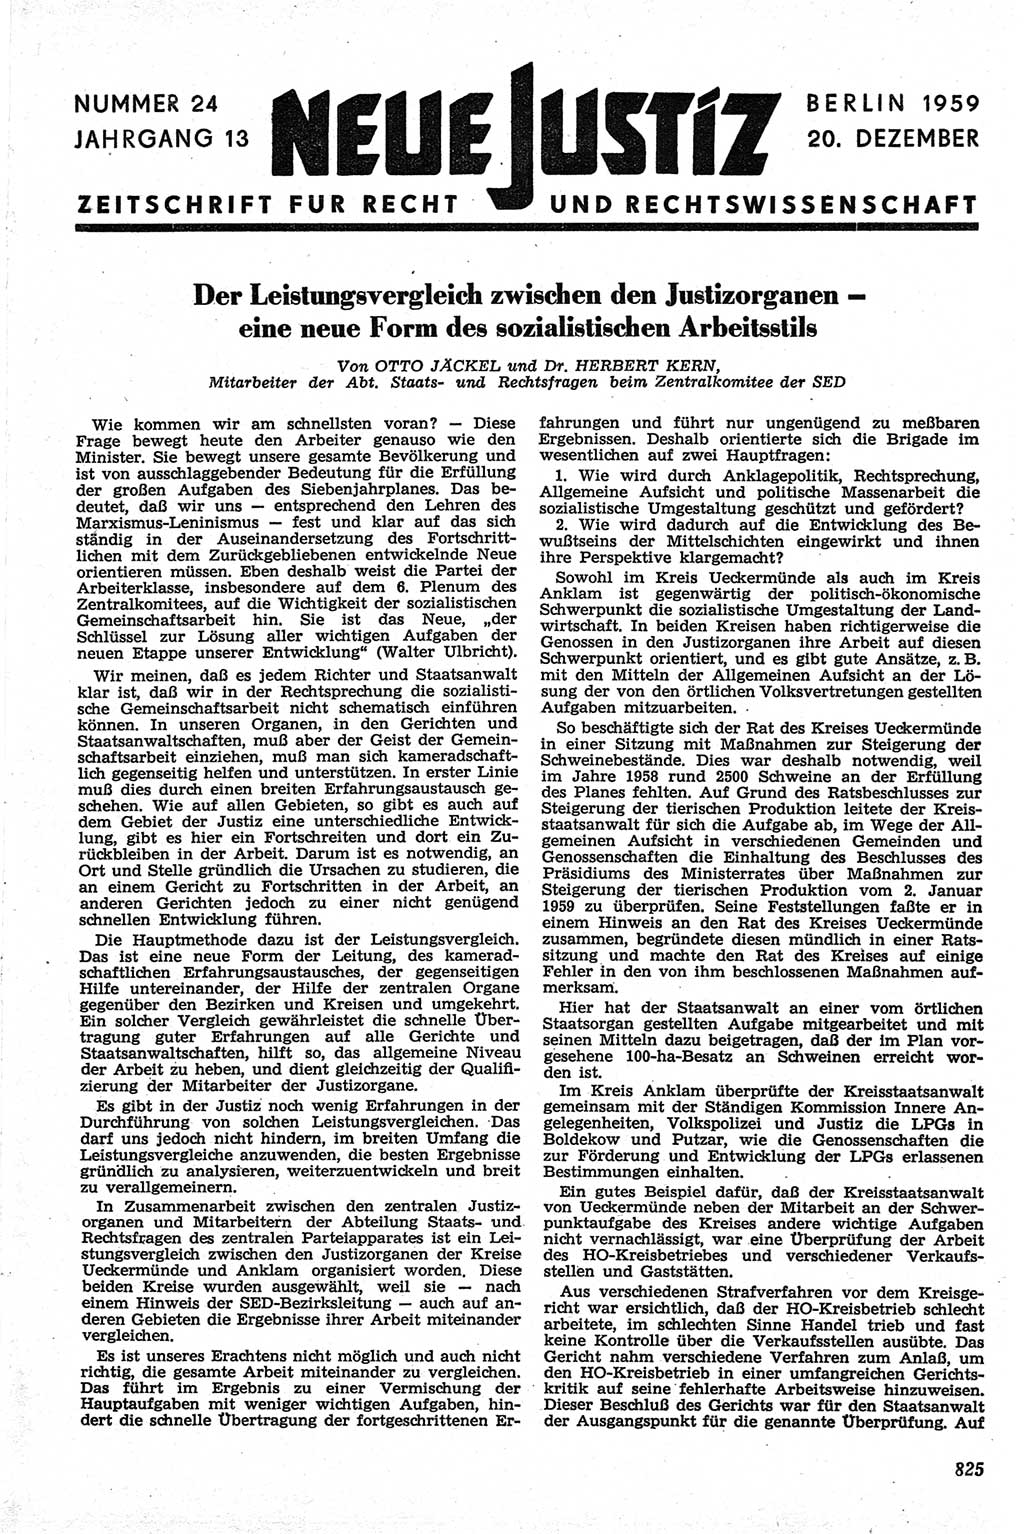 Neue Justiz (NJ), Zeitschrift für Recht und Rechtswissenschaft [Deutsche Demokratische Republik (DDR)], 13. Jahrgang 1959, Seite 825 (NJ DDR 1959, S. 825)